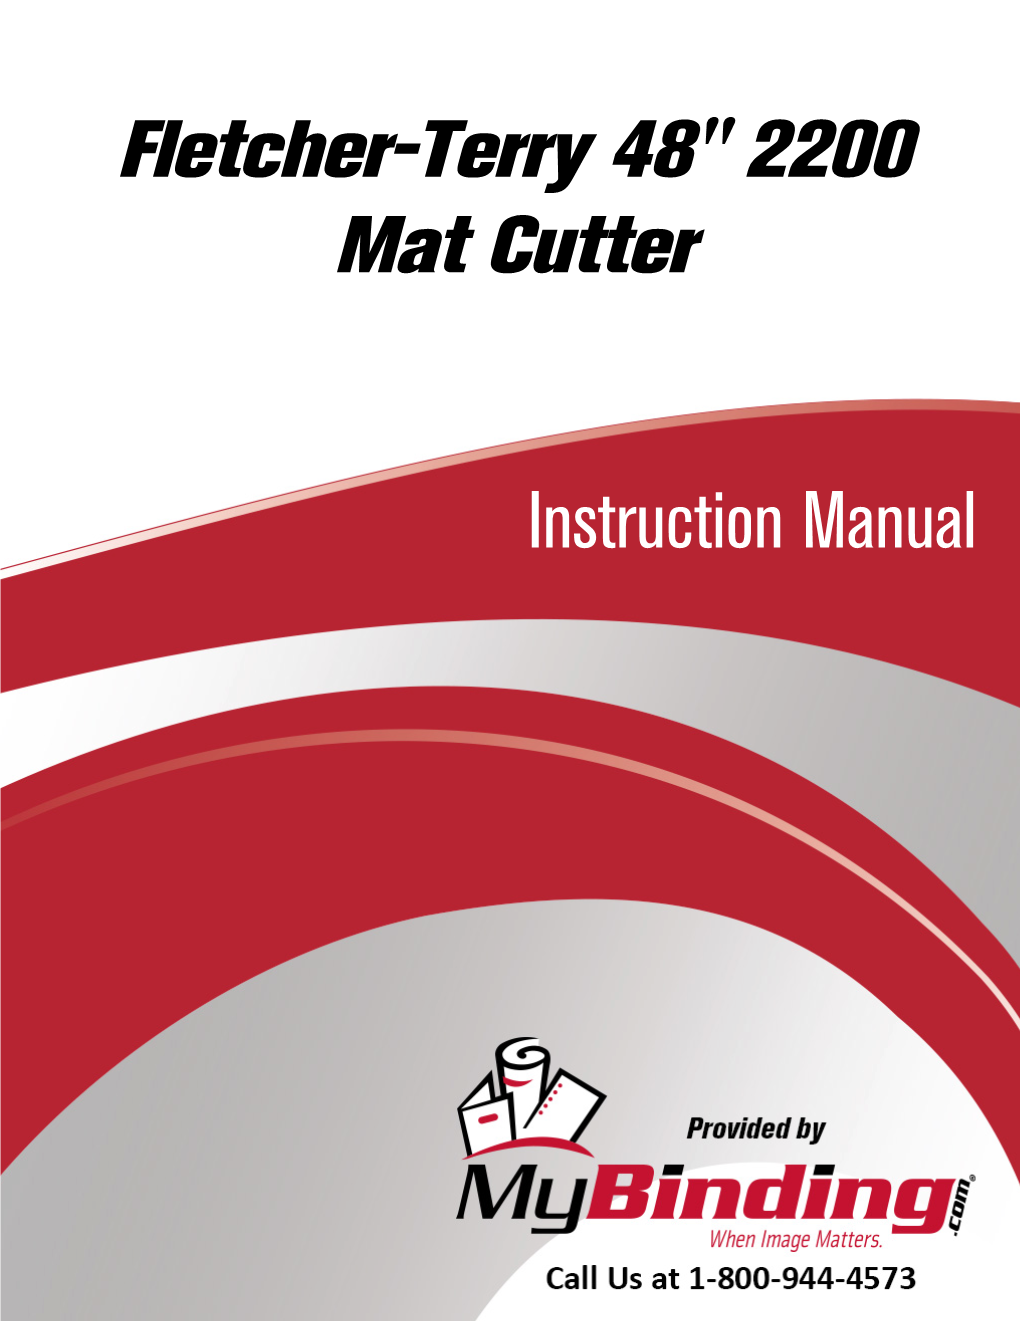 Fletcher-Terry 48" 2200 Mat Cutter User Manual